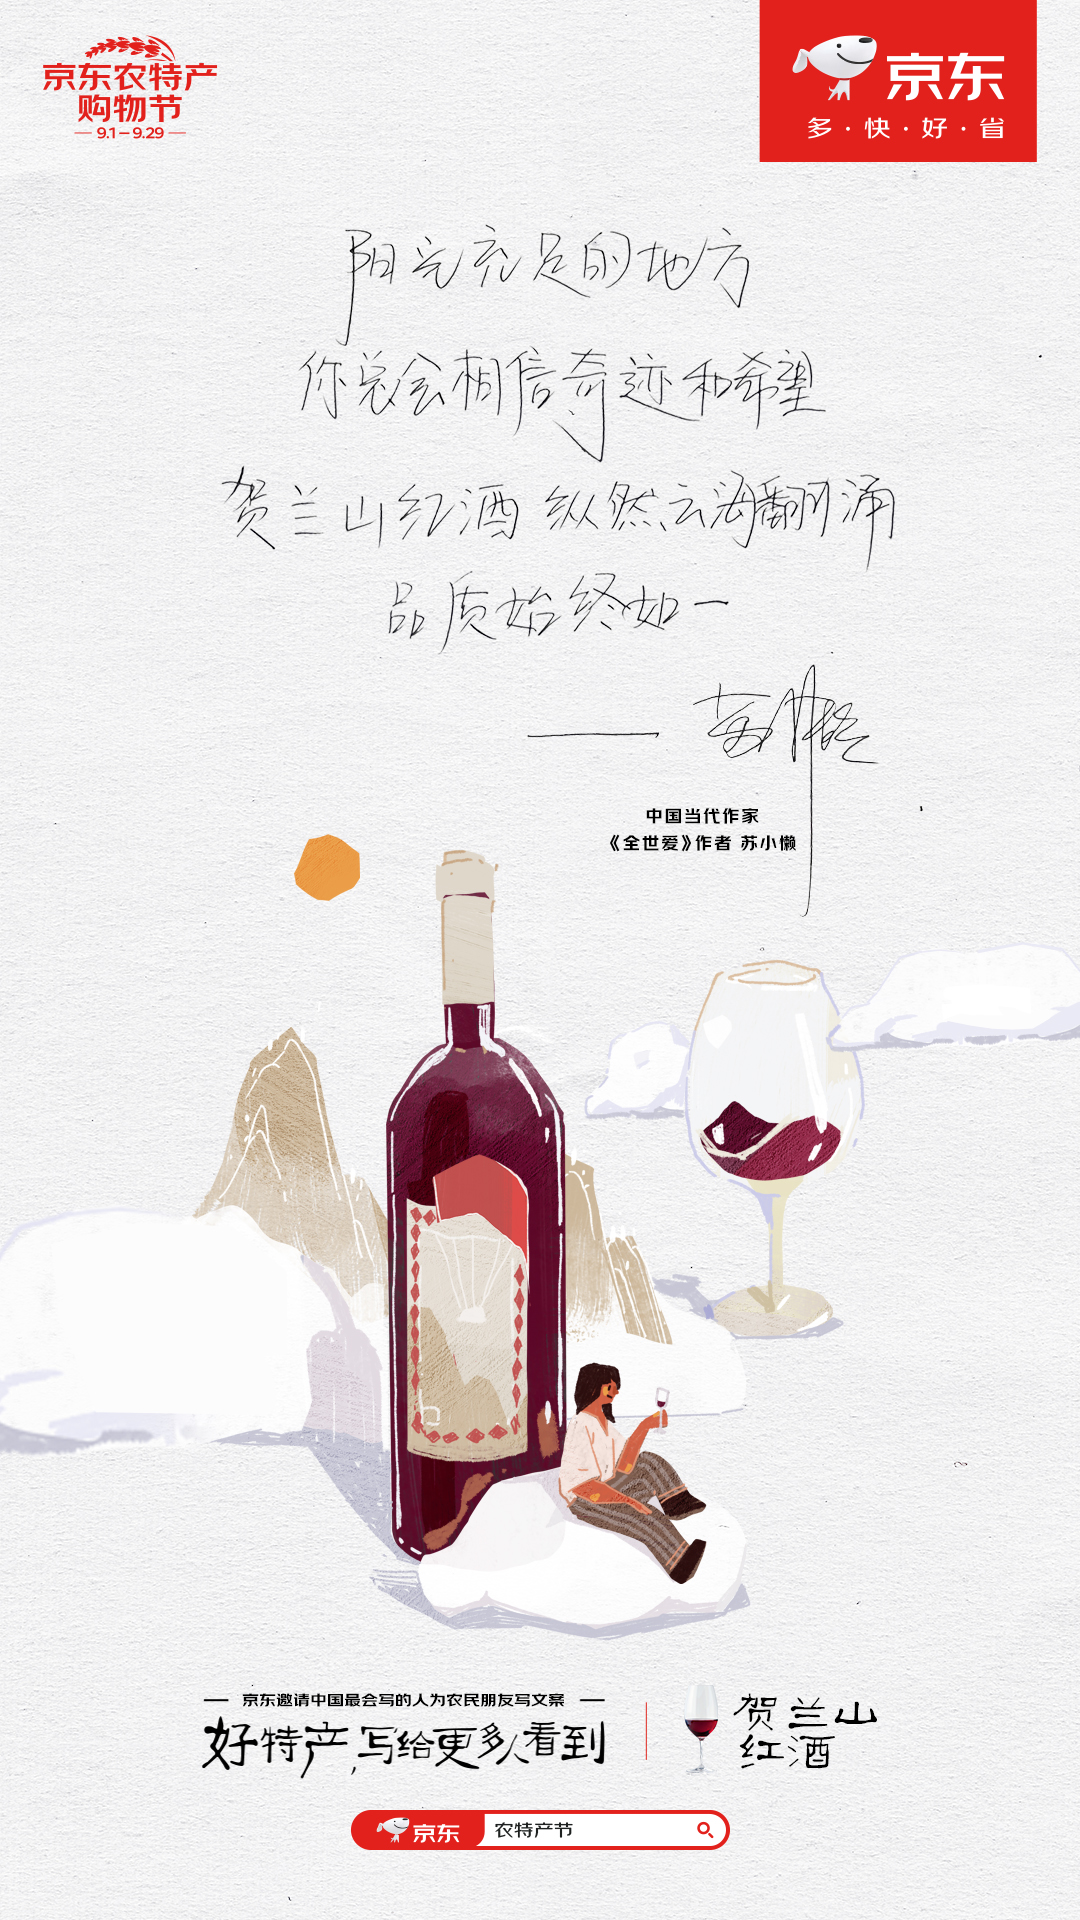 贺兰山红酒.jpg